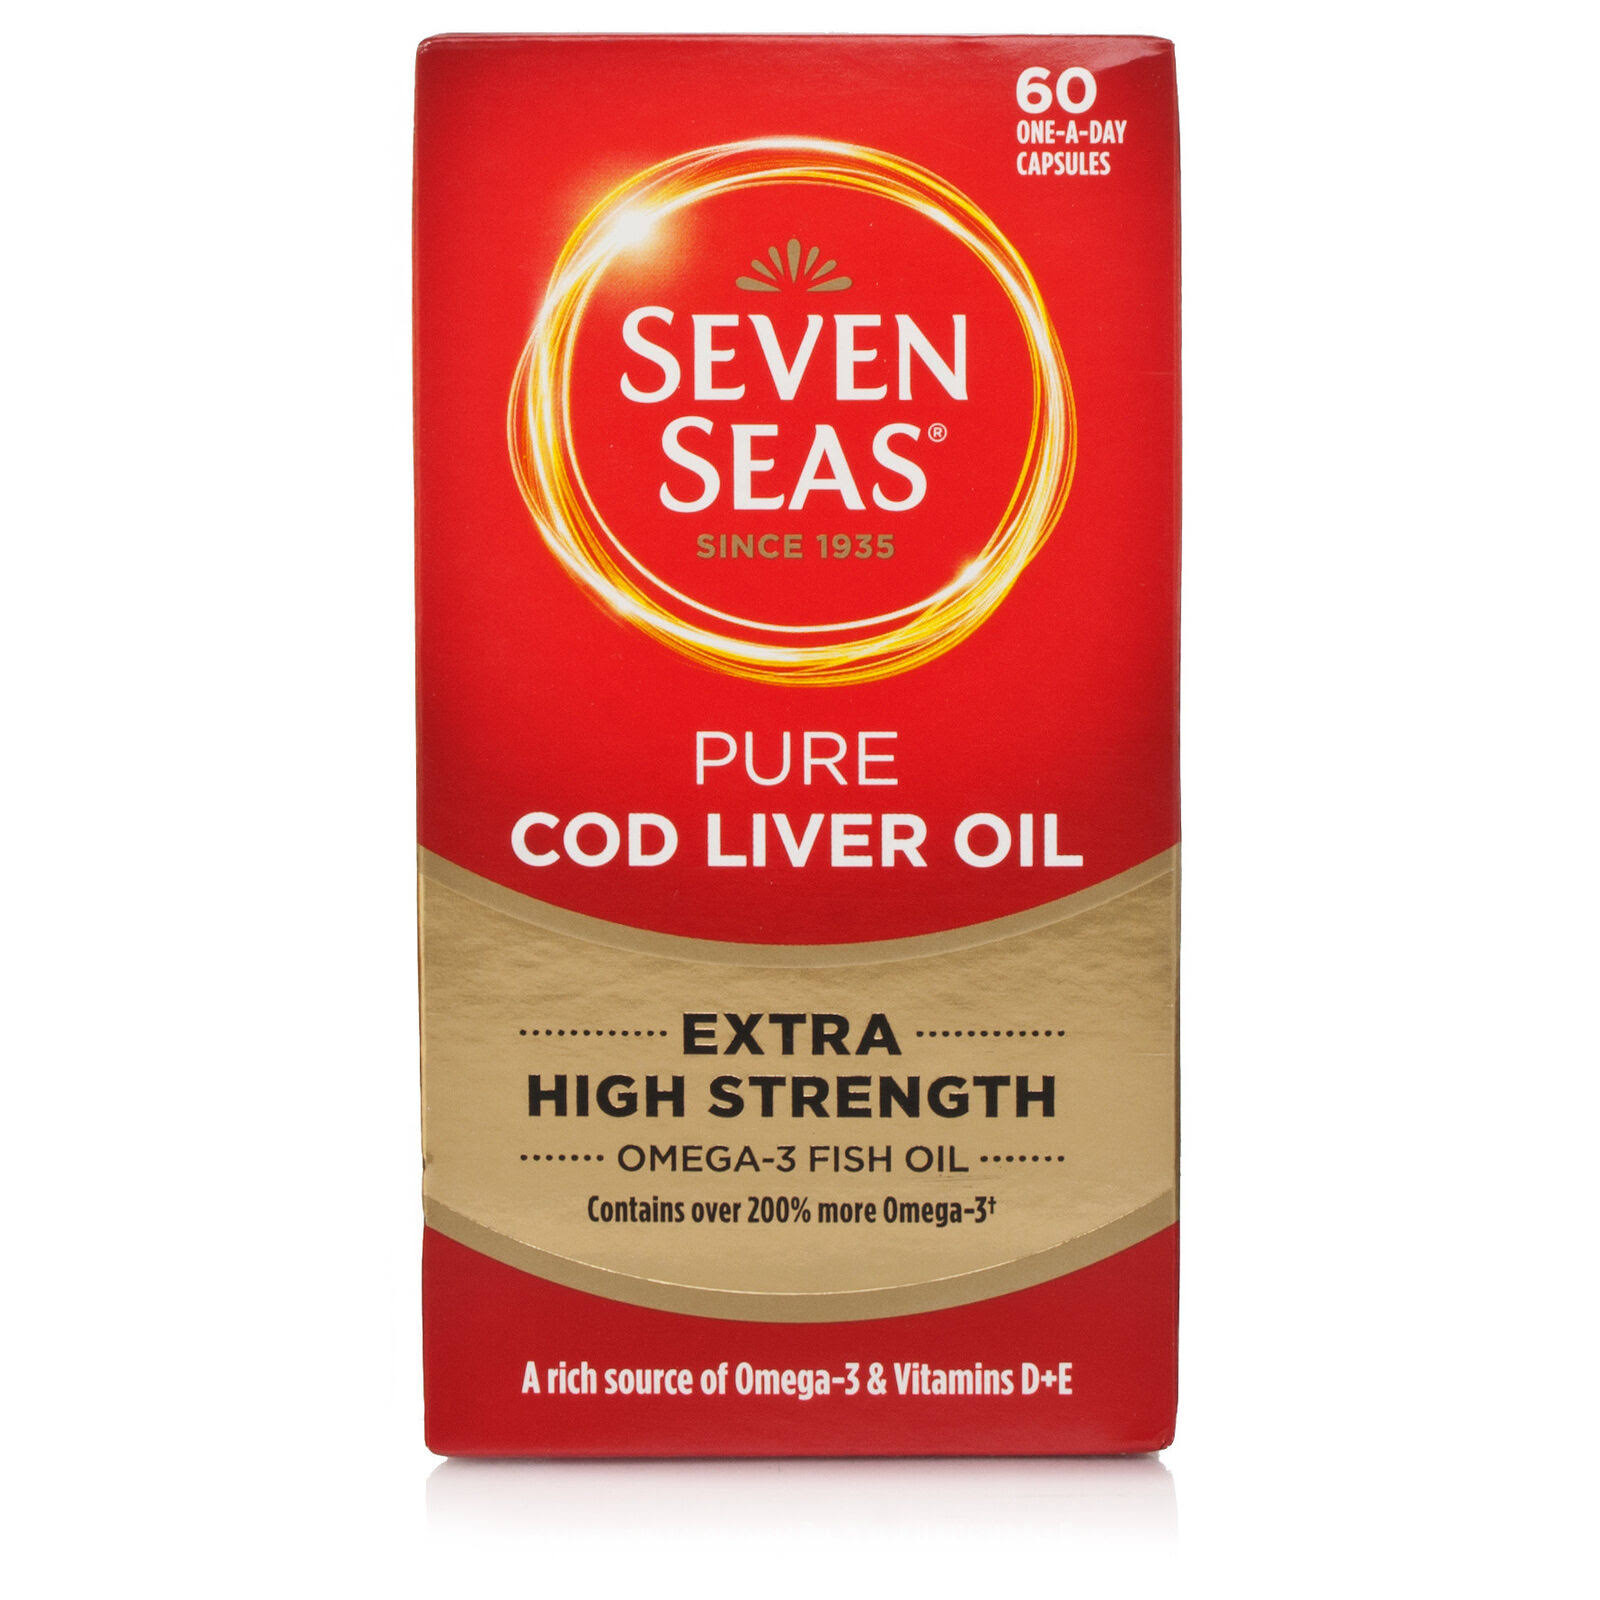 Seven Seas Cod Liver Oil Plus Omega-3 Fish Oil - Maximum Strength, 60 Capsules